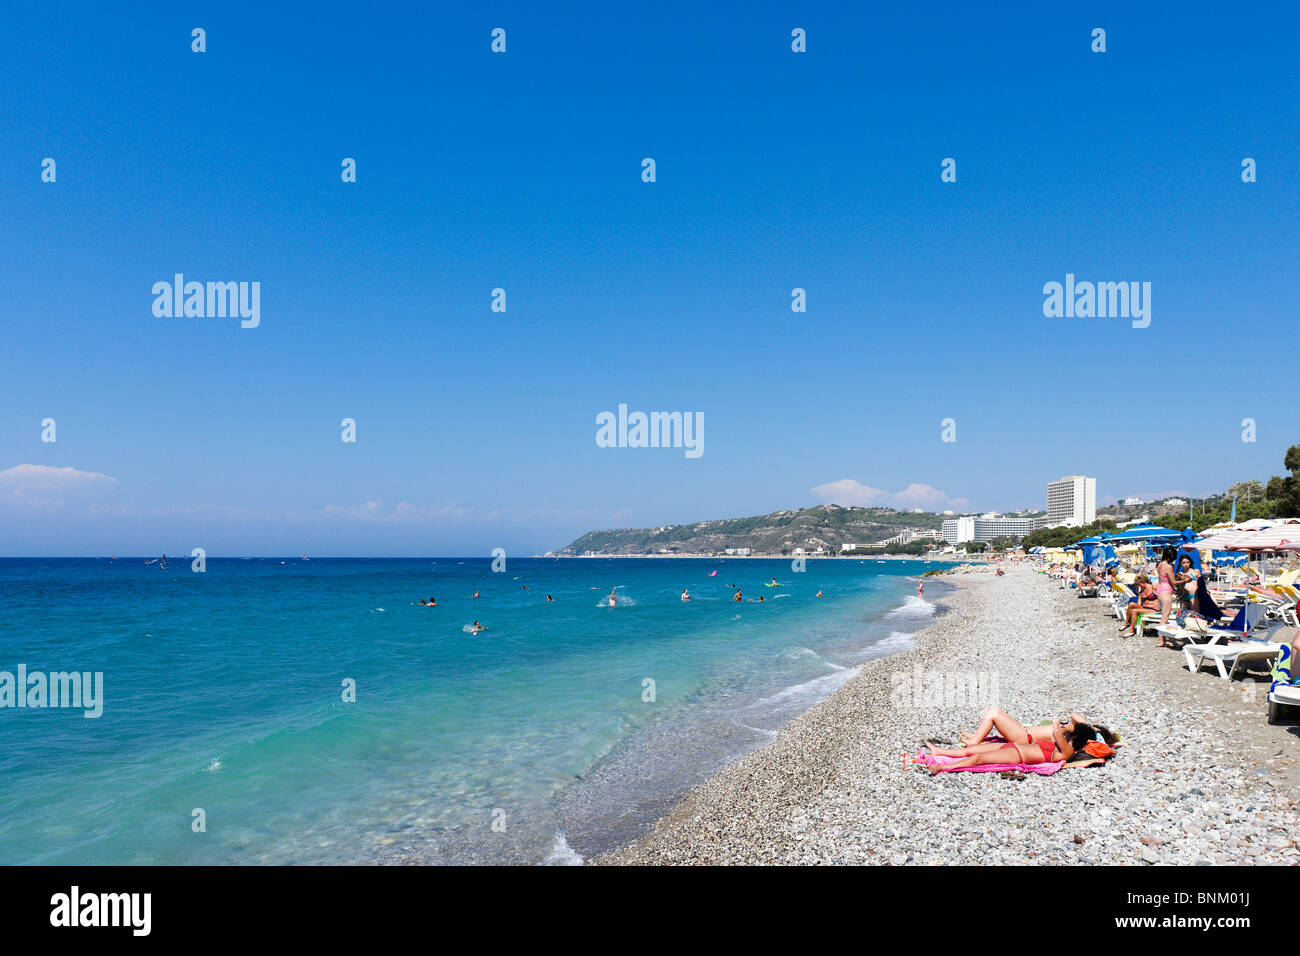 Beach at Ixia, near Ialyssos, Bay of Trianda, Rhodes, Greece Stock Photo